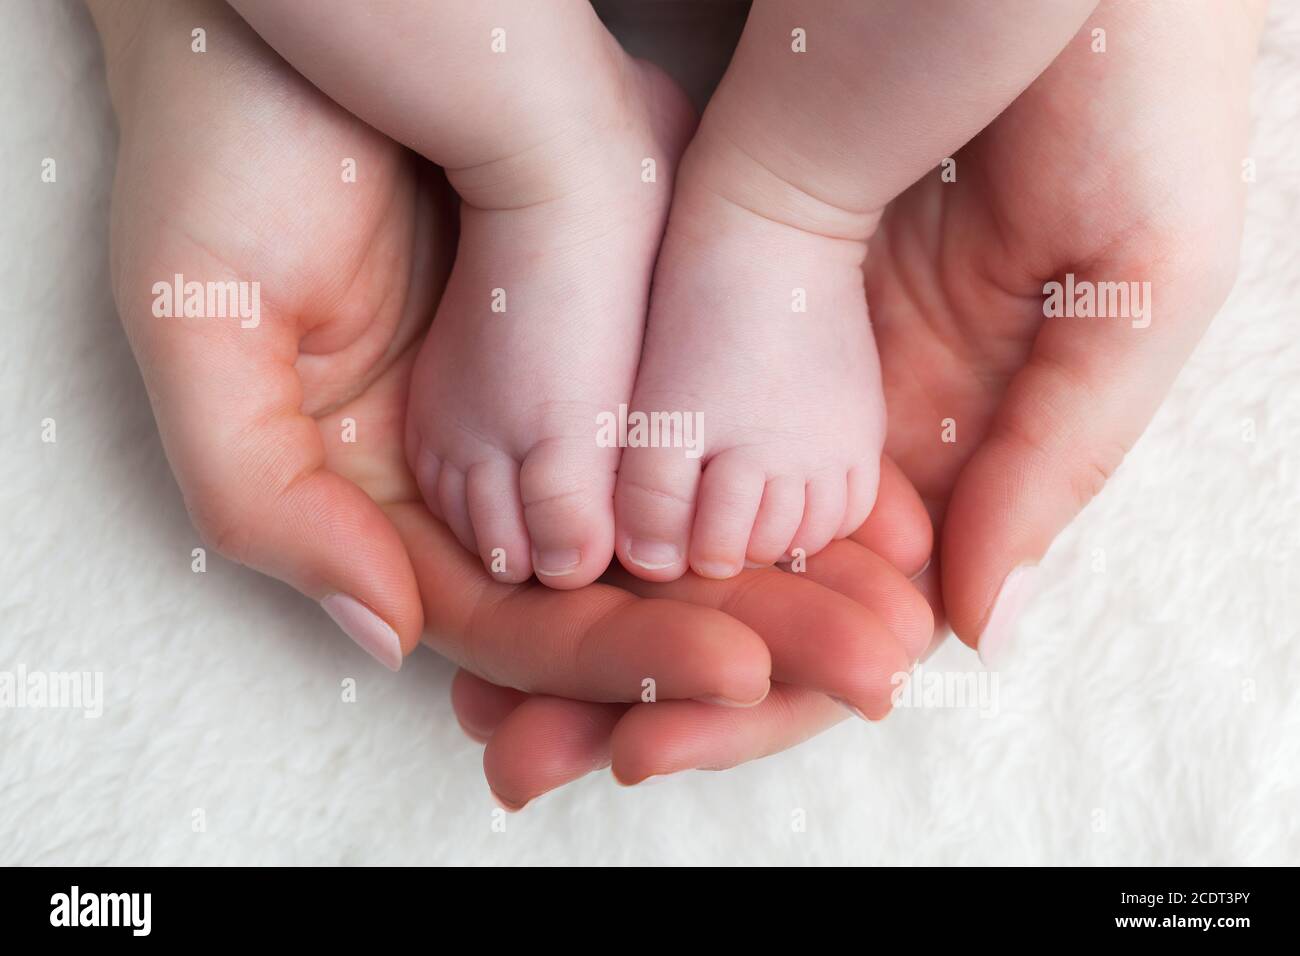 Pies recién nacidos en manos de la madre#39;s. Cuidado de niños, sentirse seguro, proteger. Foto de stock